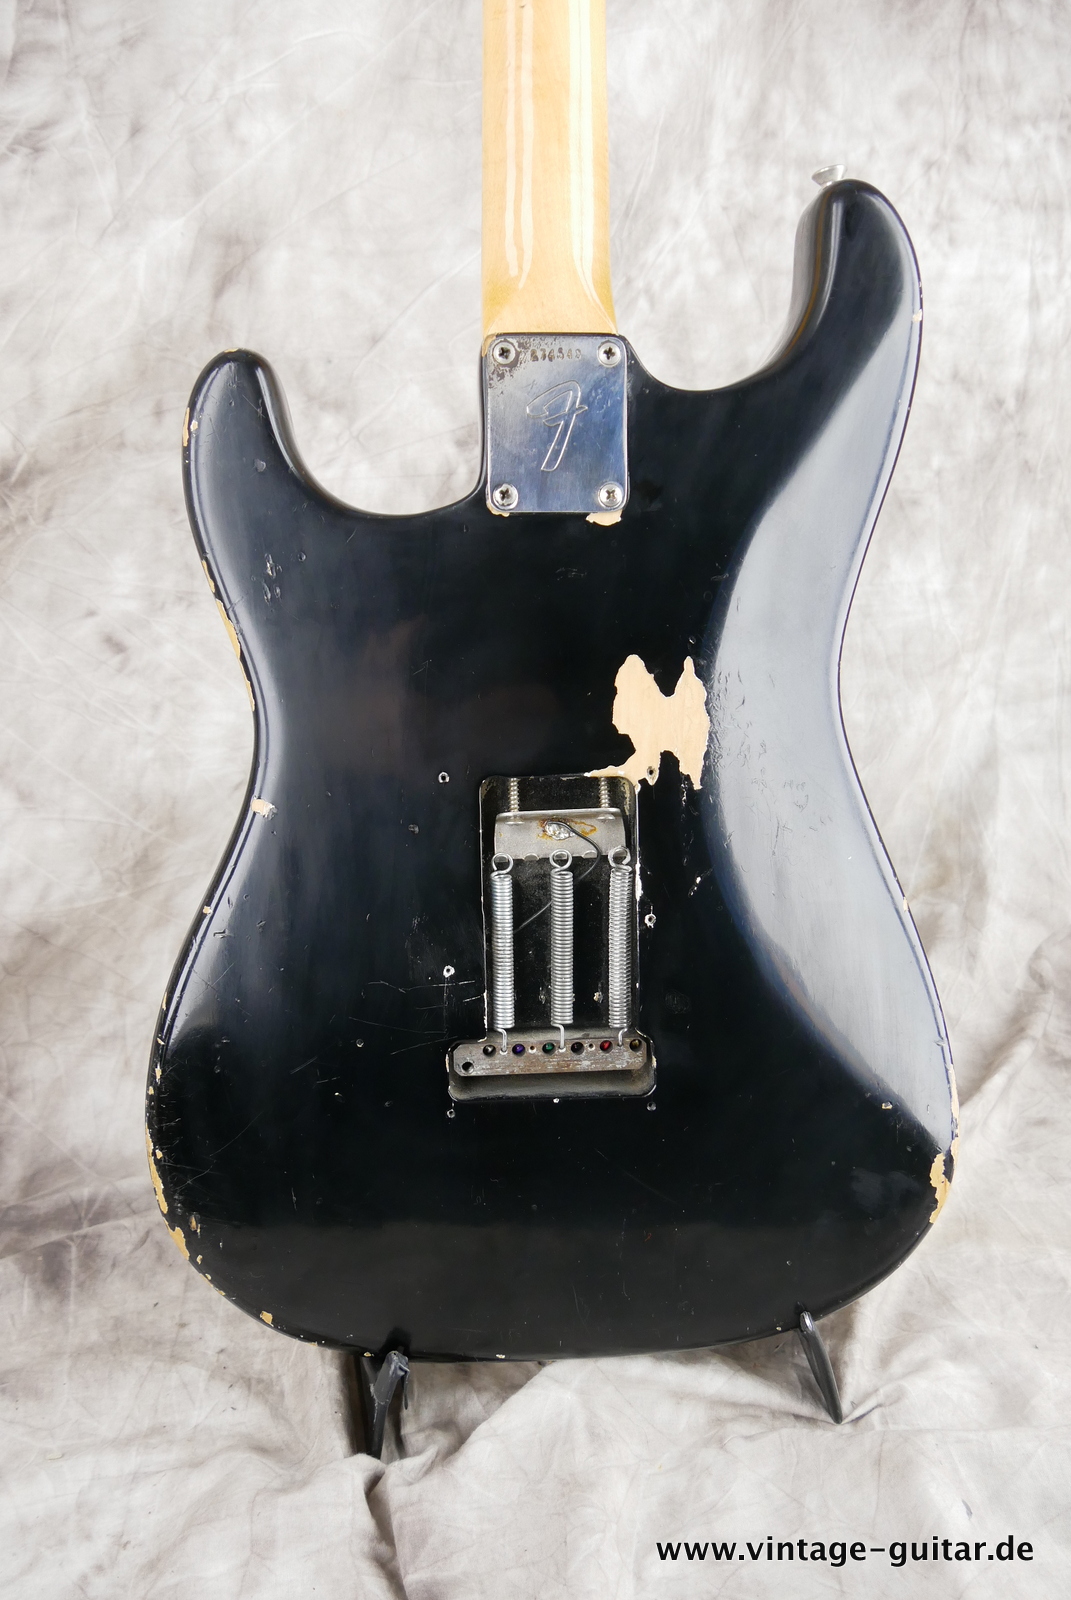 Fender-stratocaster-1969-black-004.JPG